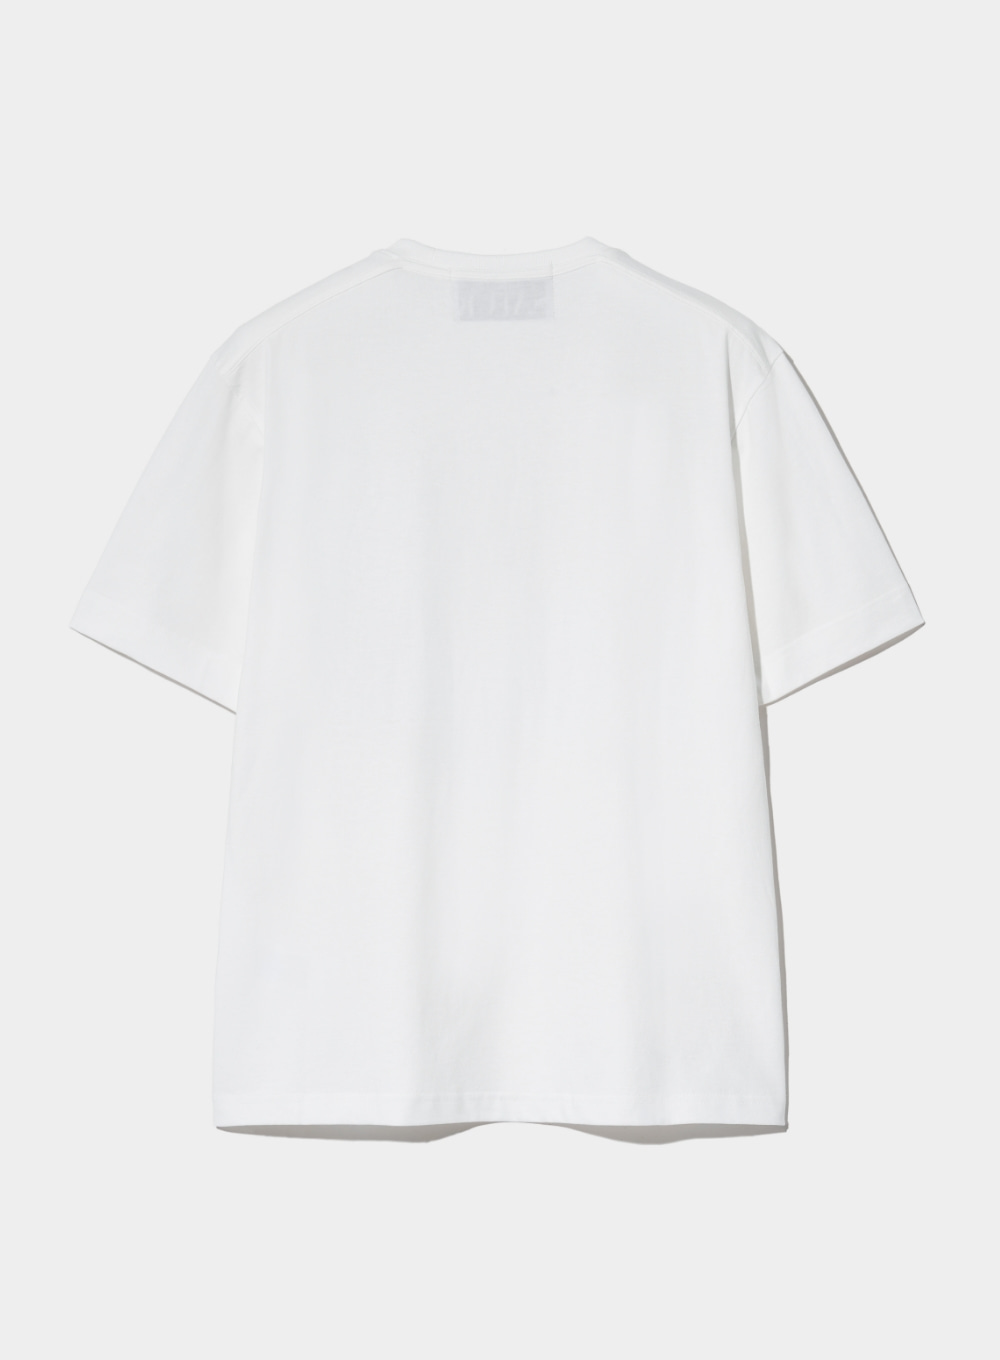 Sailing Graphic T-Shirt - Clean White